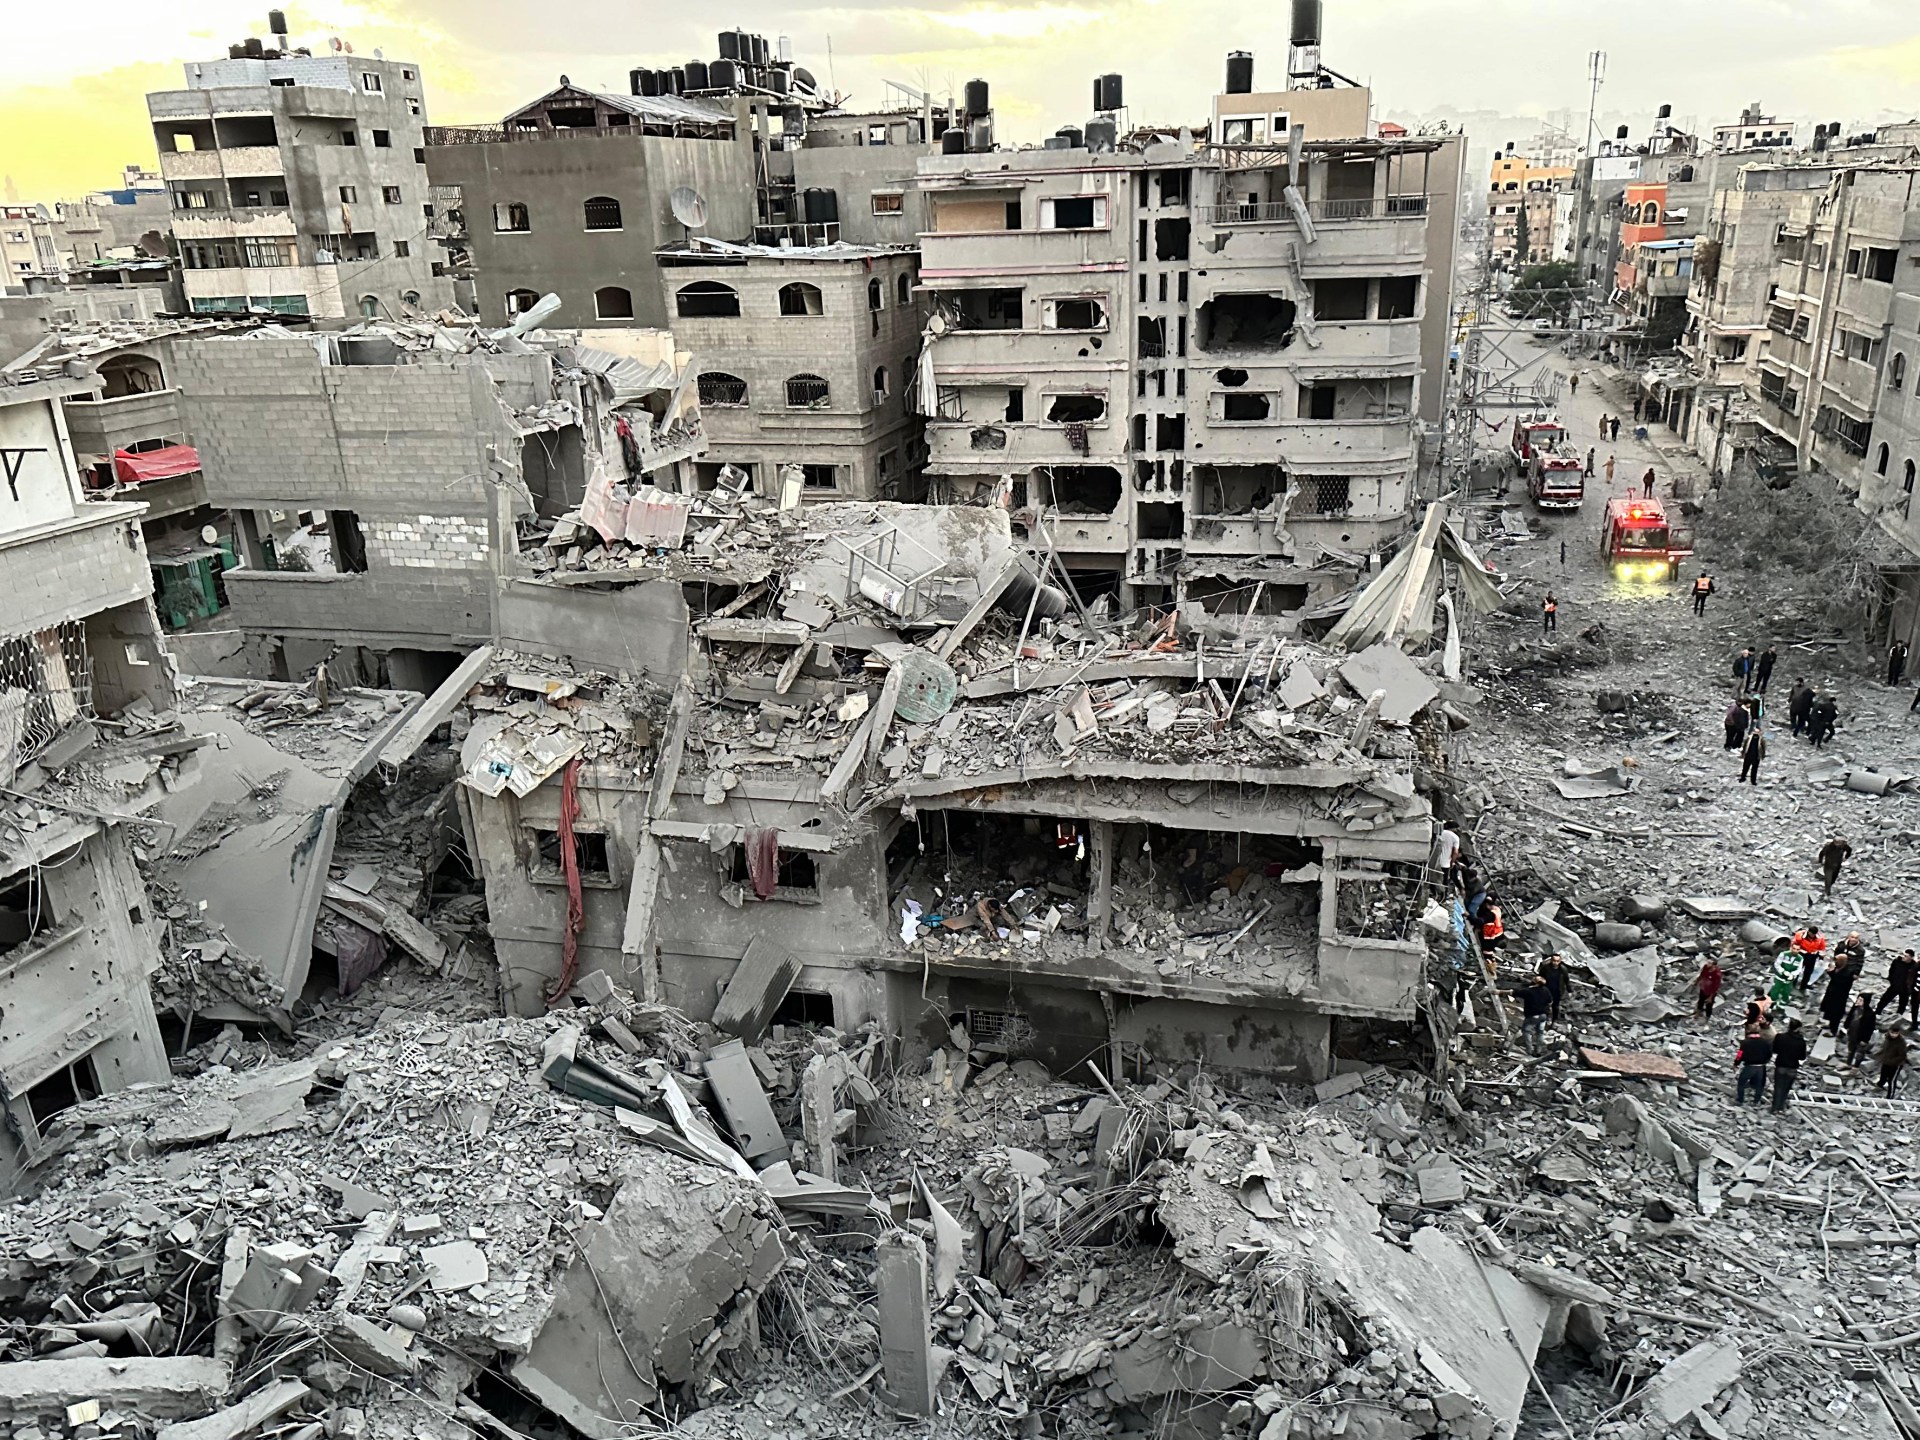 قطر تعلن نجاح الوساطة واتفاق هدنة إنسانية في غزة | أخبار – البوكس نيوز